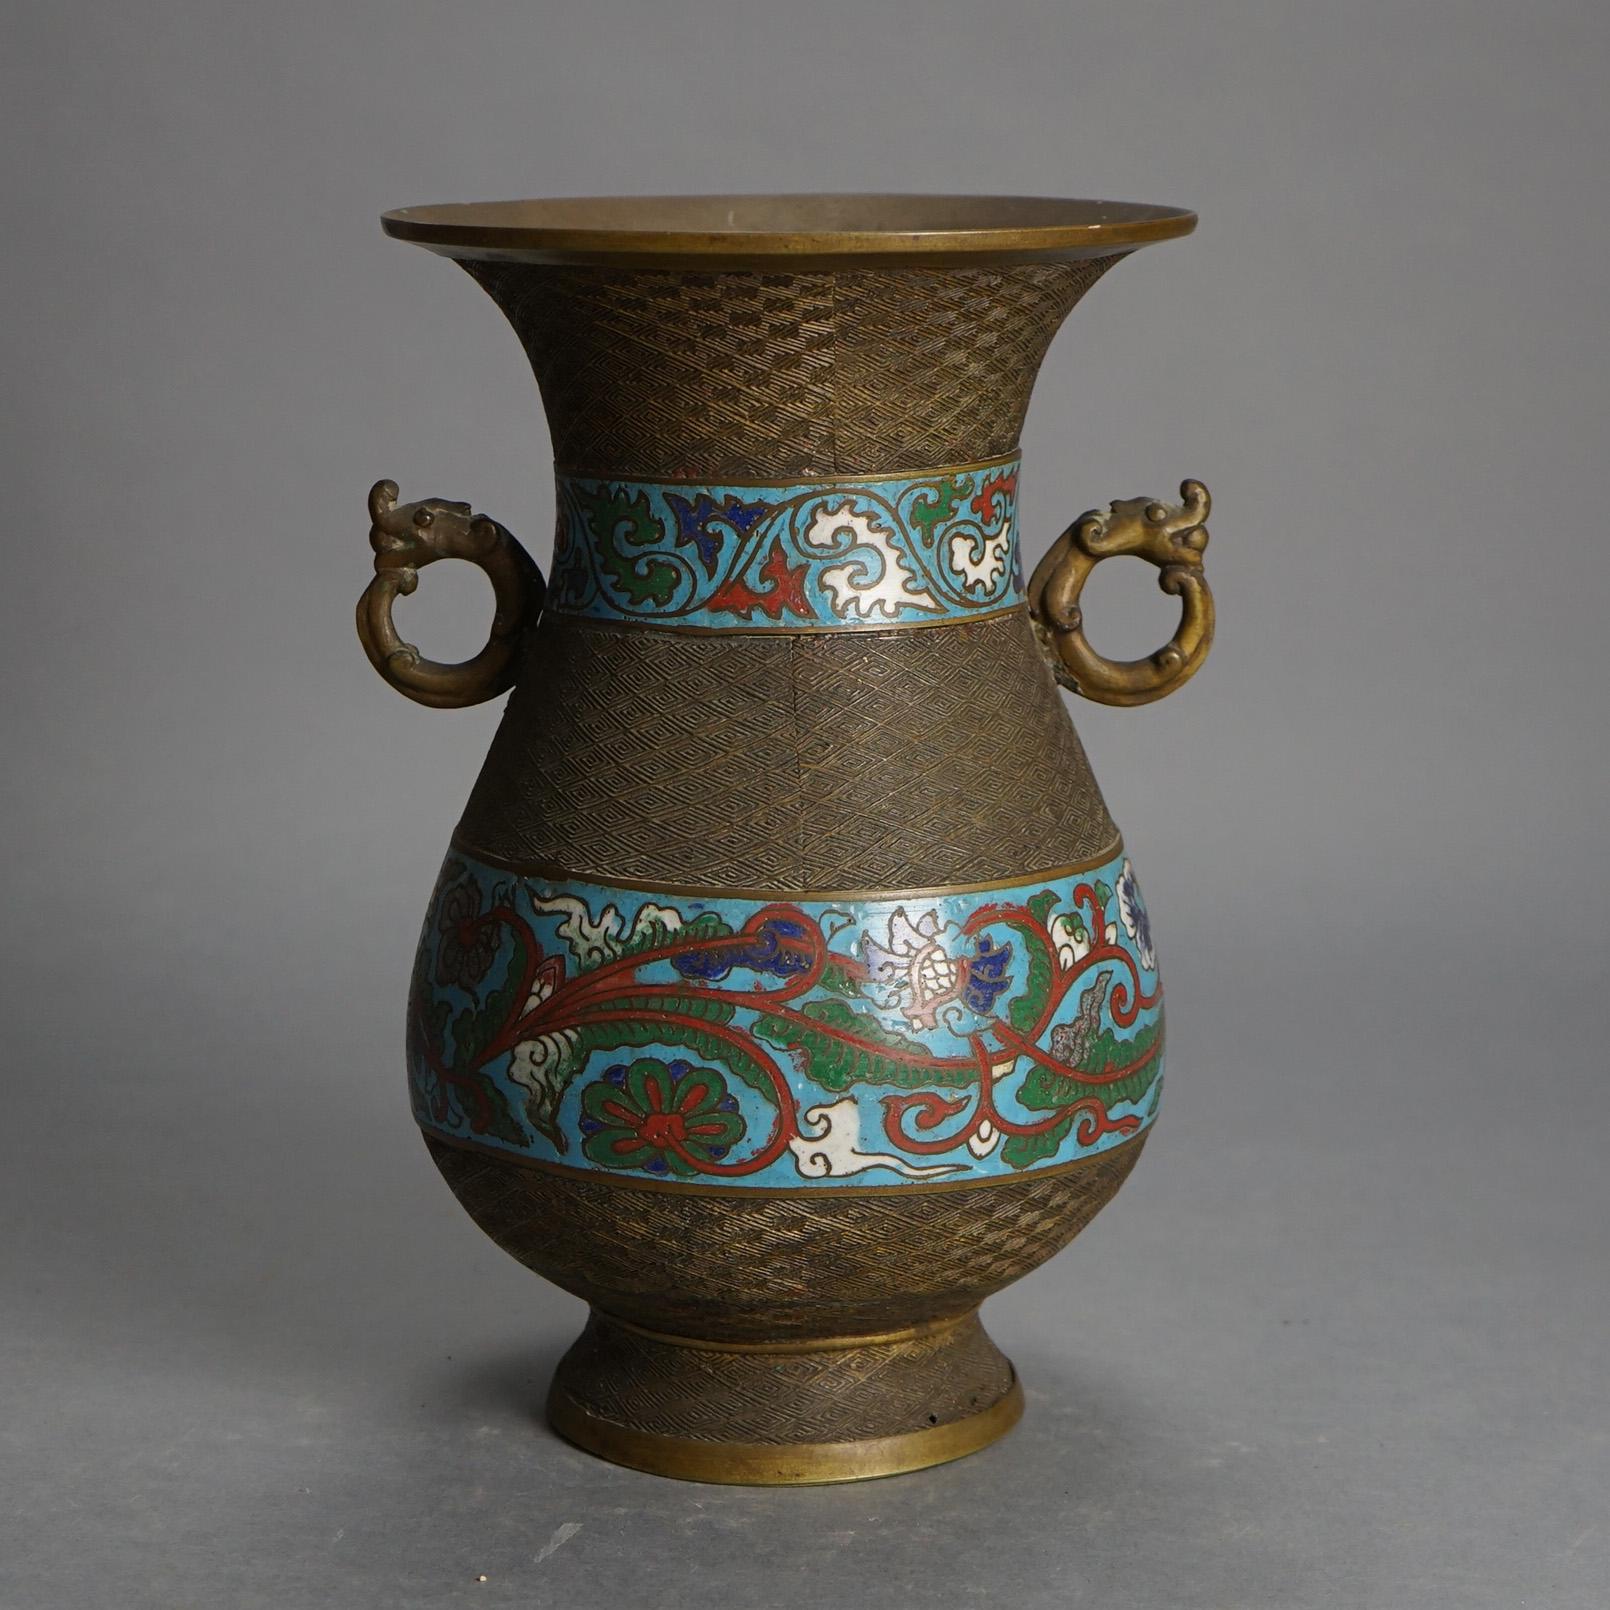 Antike chinesische Bronze Cloisonne emaillierte Vase mit Doppel Drachen Form Griffe C1910

Maße - 11,75 